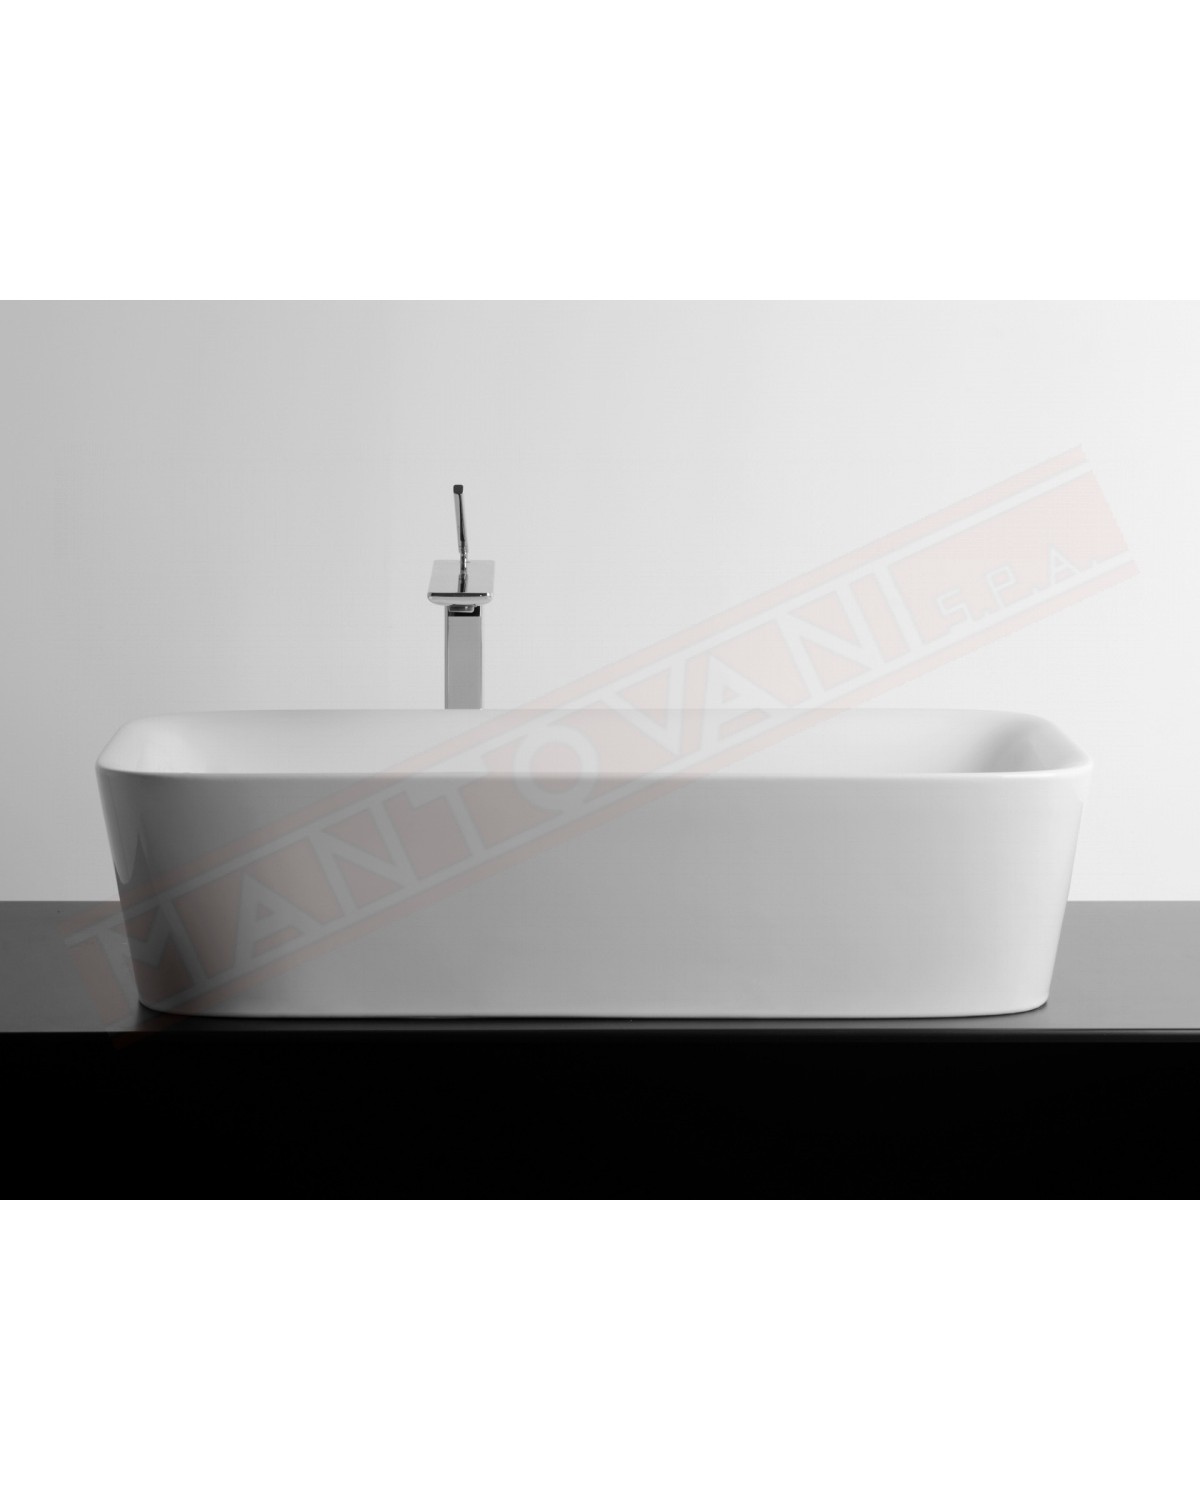 Lavabo Bagno Soul 700x380xh180 bianco opaco . Valdama lavabo da appoggio disegnato da Monia Marzano senza foro rubinetto.